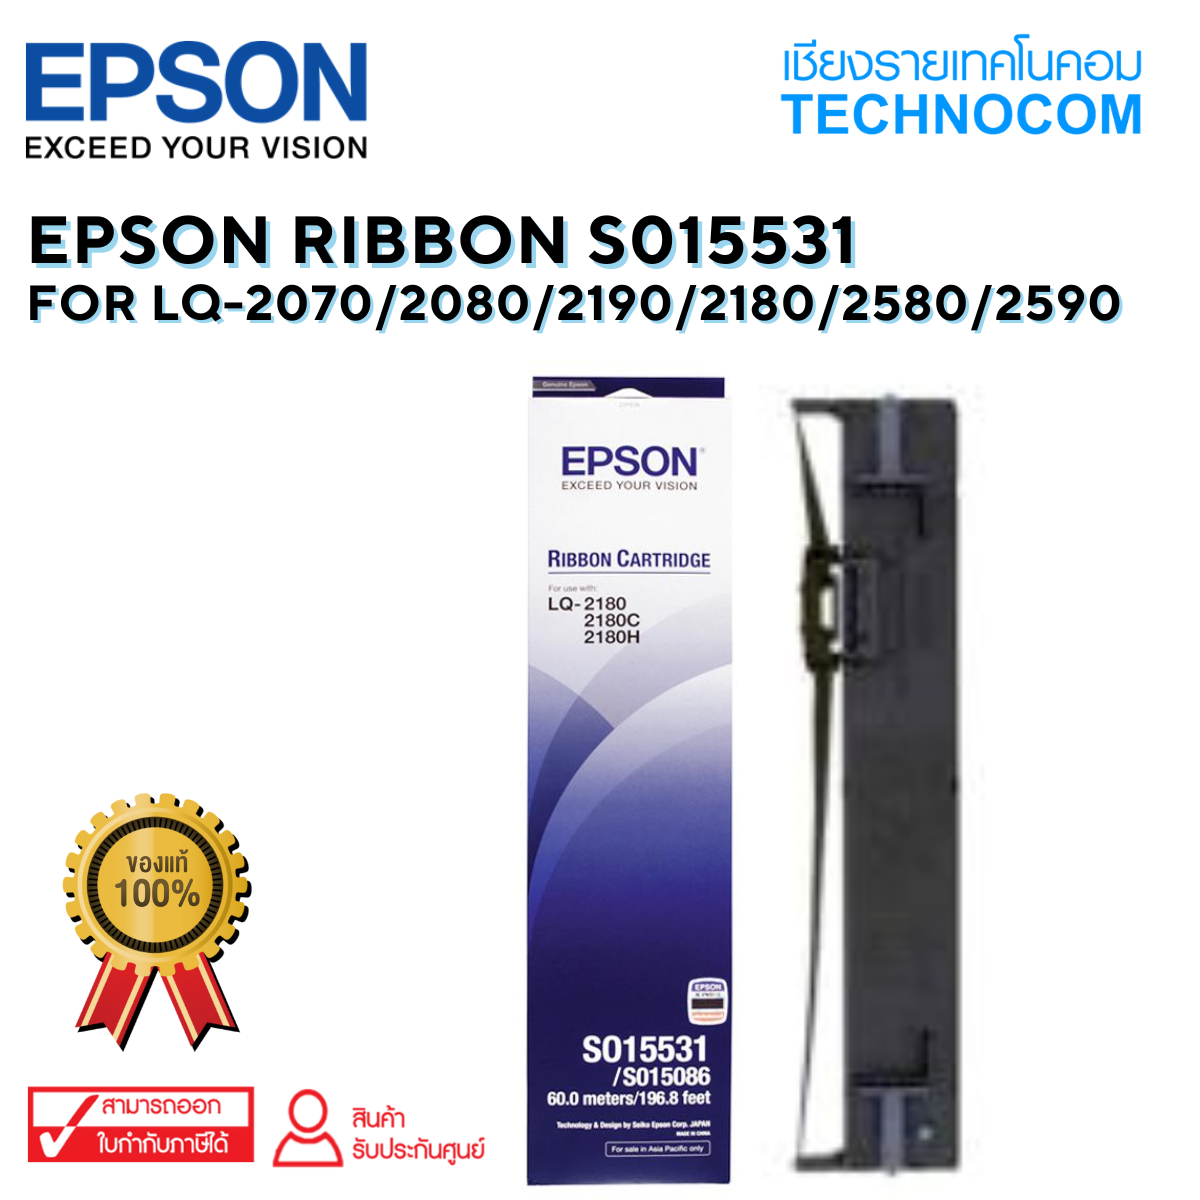 EPSON RIBBON S015531 For LQ-2070/2080/2190/2180/2580/2590